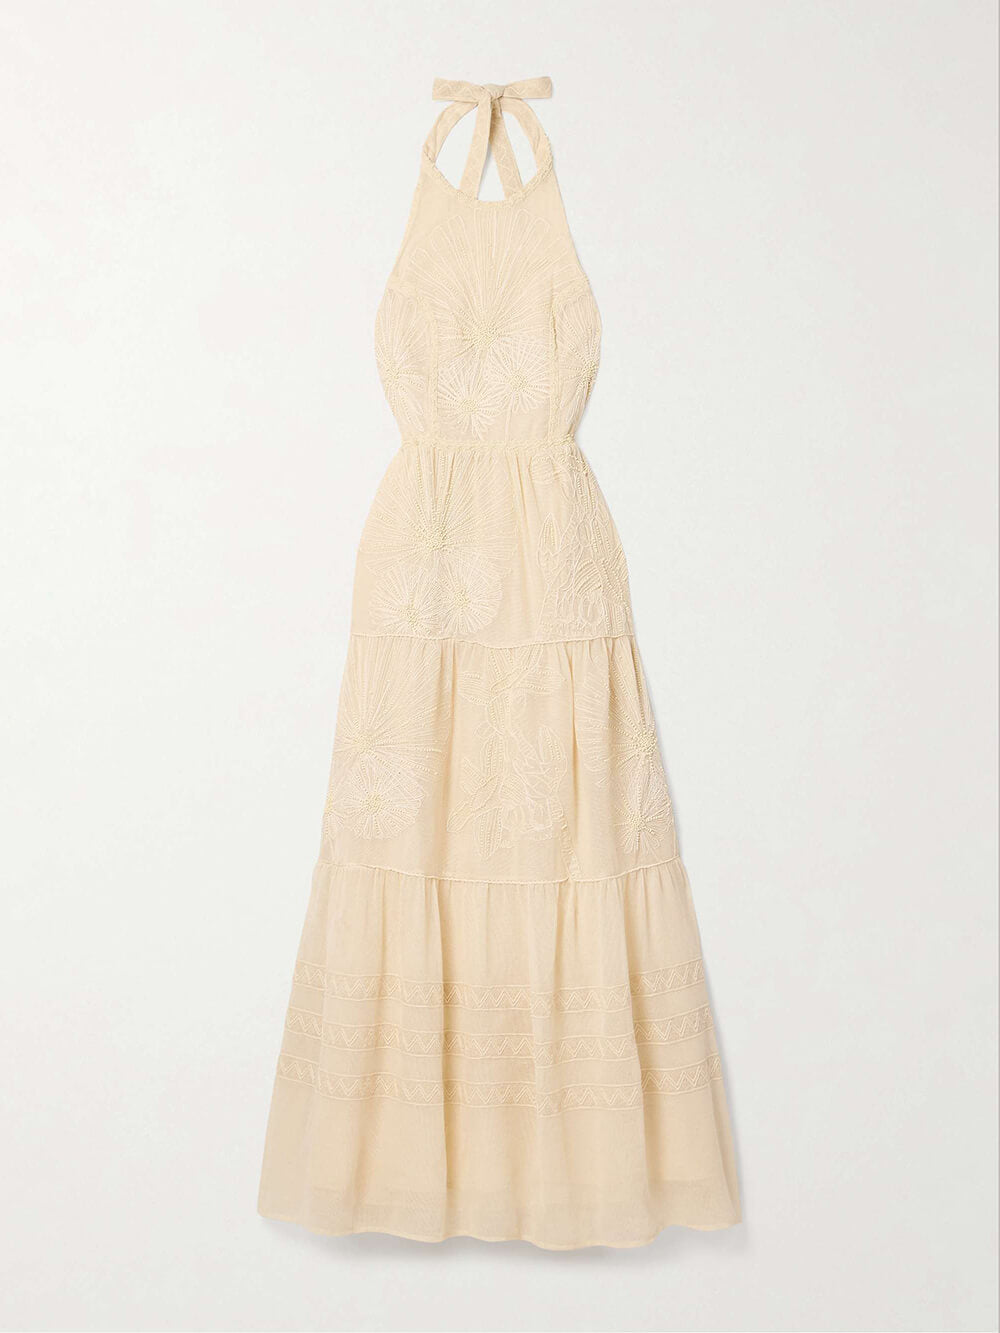 Elegante versierde maxi-jurk met halternek van kant en mesh